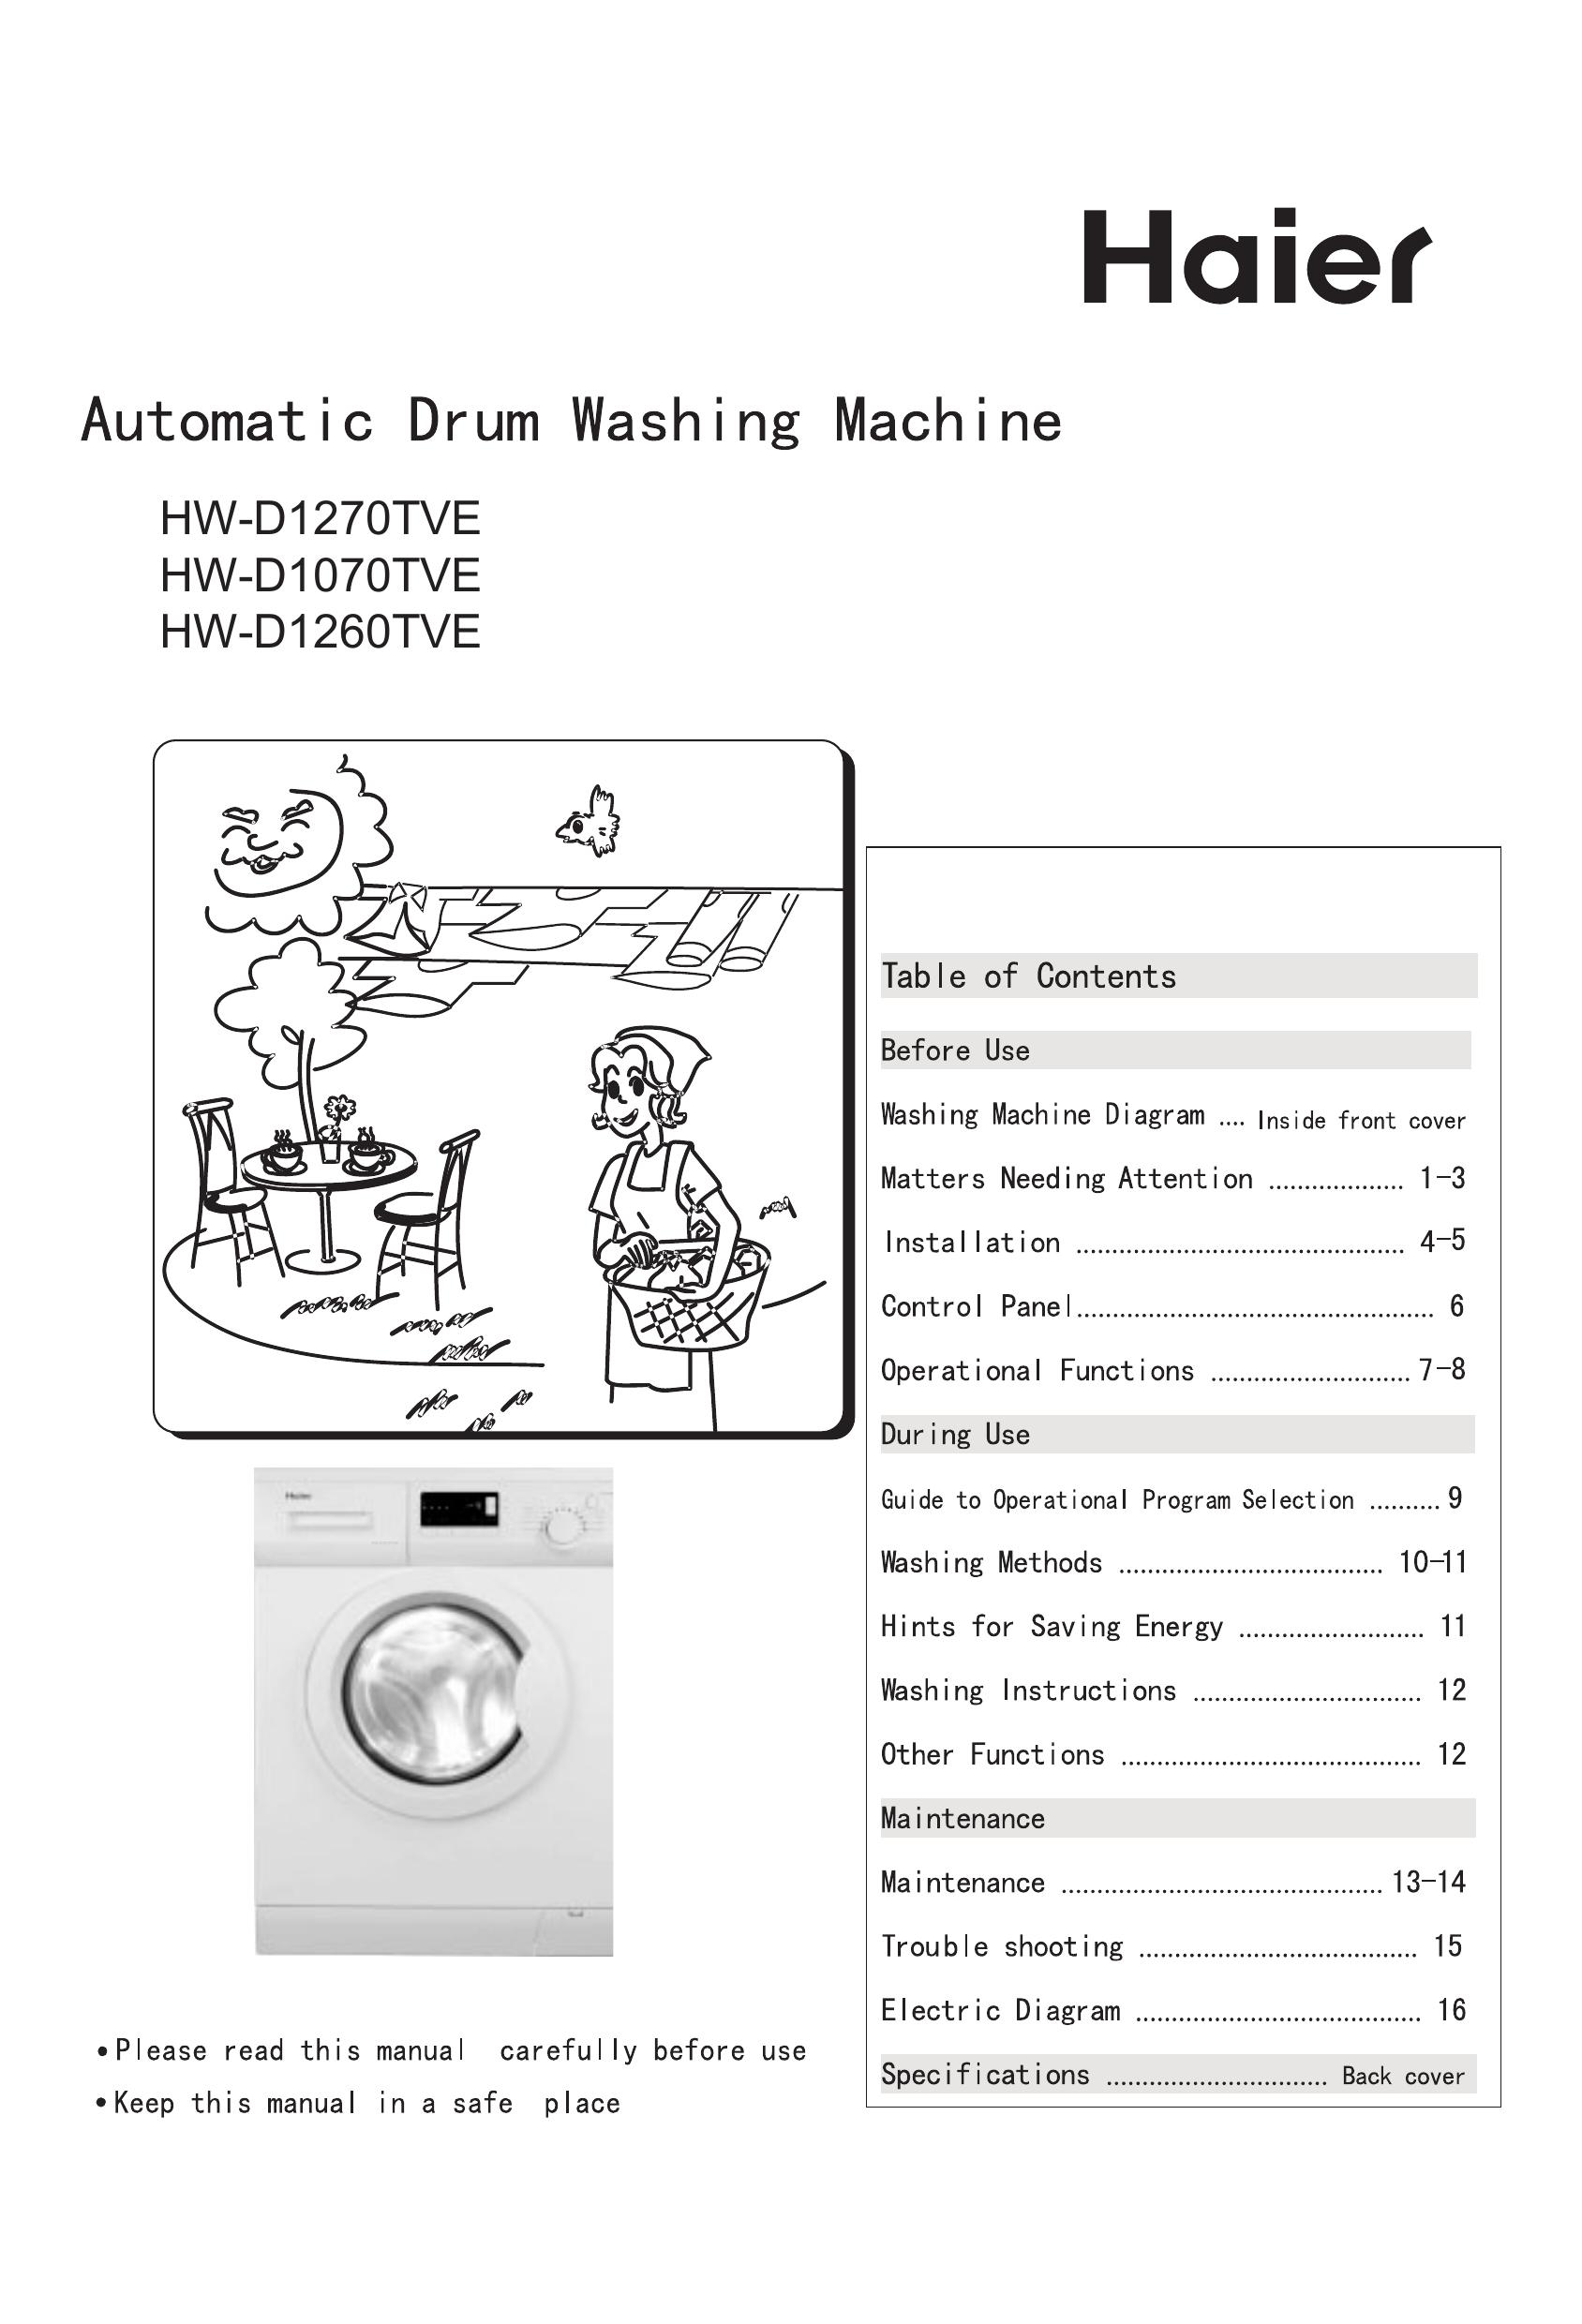 Haier HW-D1260TVE Washer/Dryer User Manual